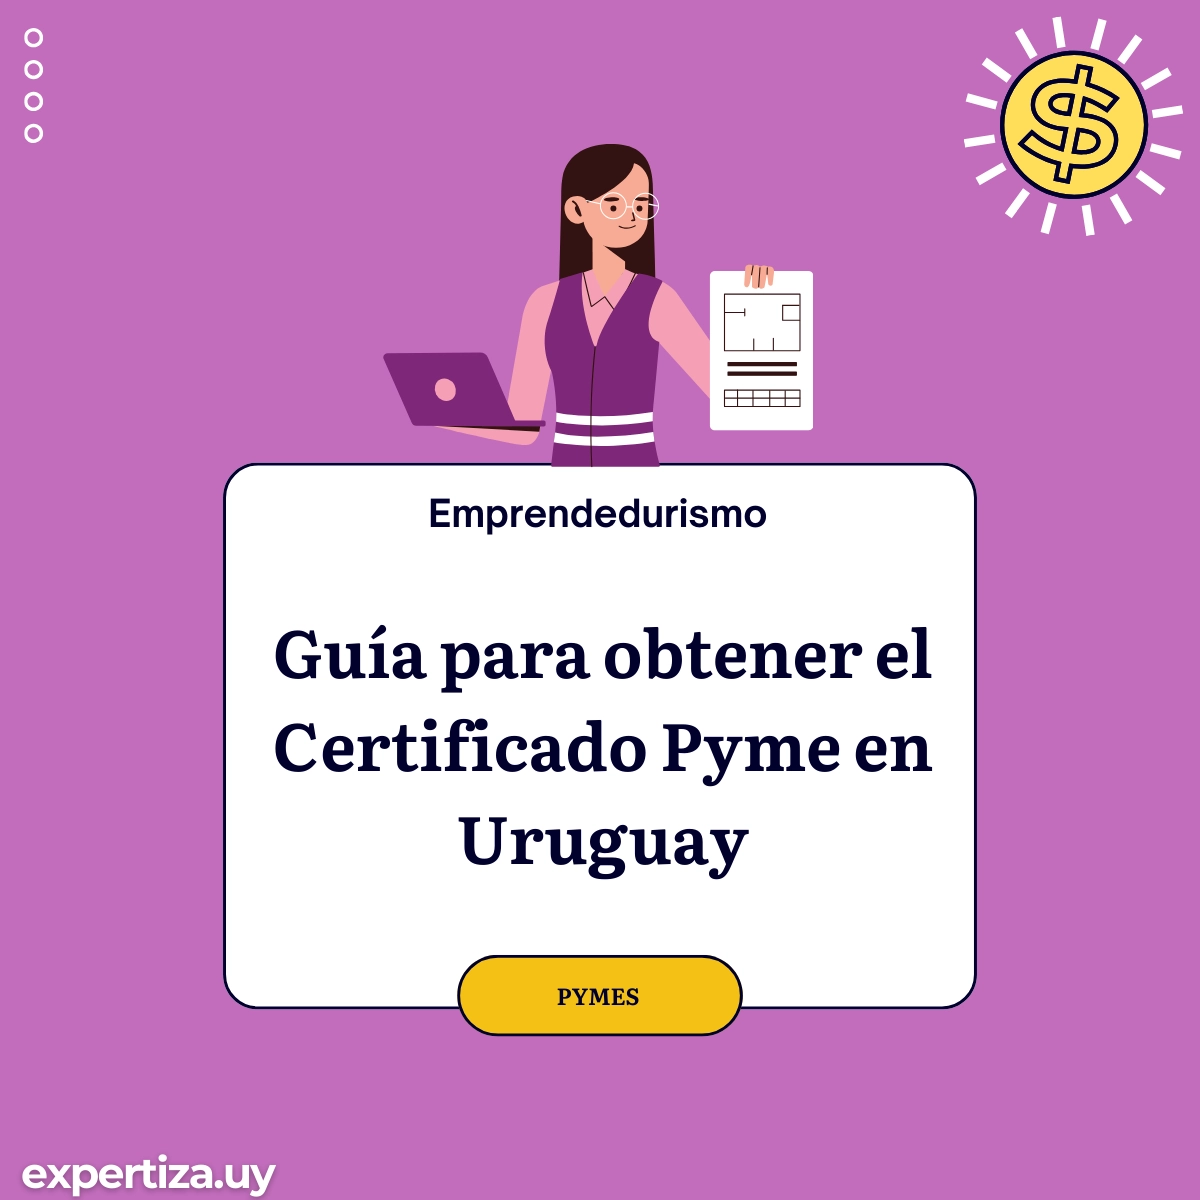 Guía para obtener el Certificado Pyme en Uruguay.